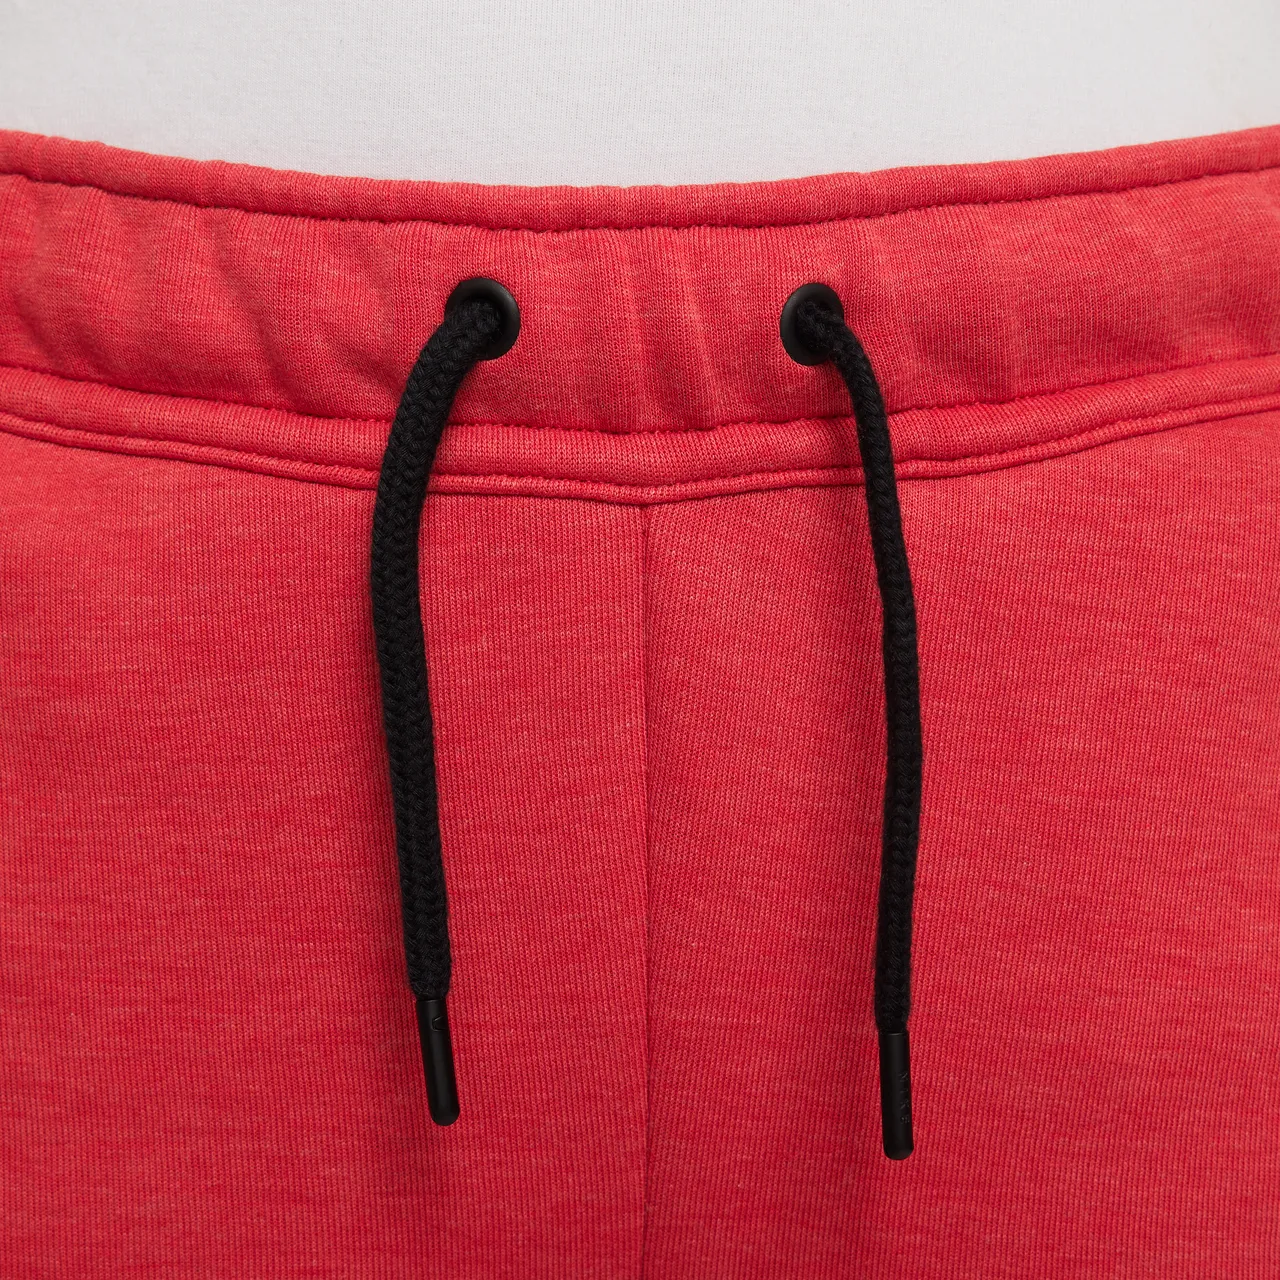 Nike Sportswear Tech Fleece Older Kids' (Boys') Trousers - Red - Cotton